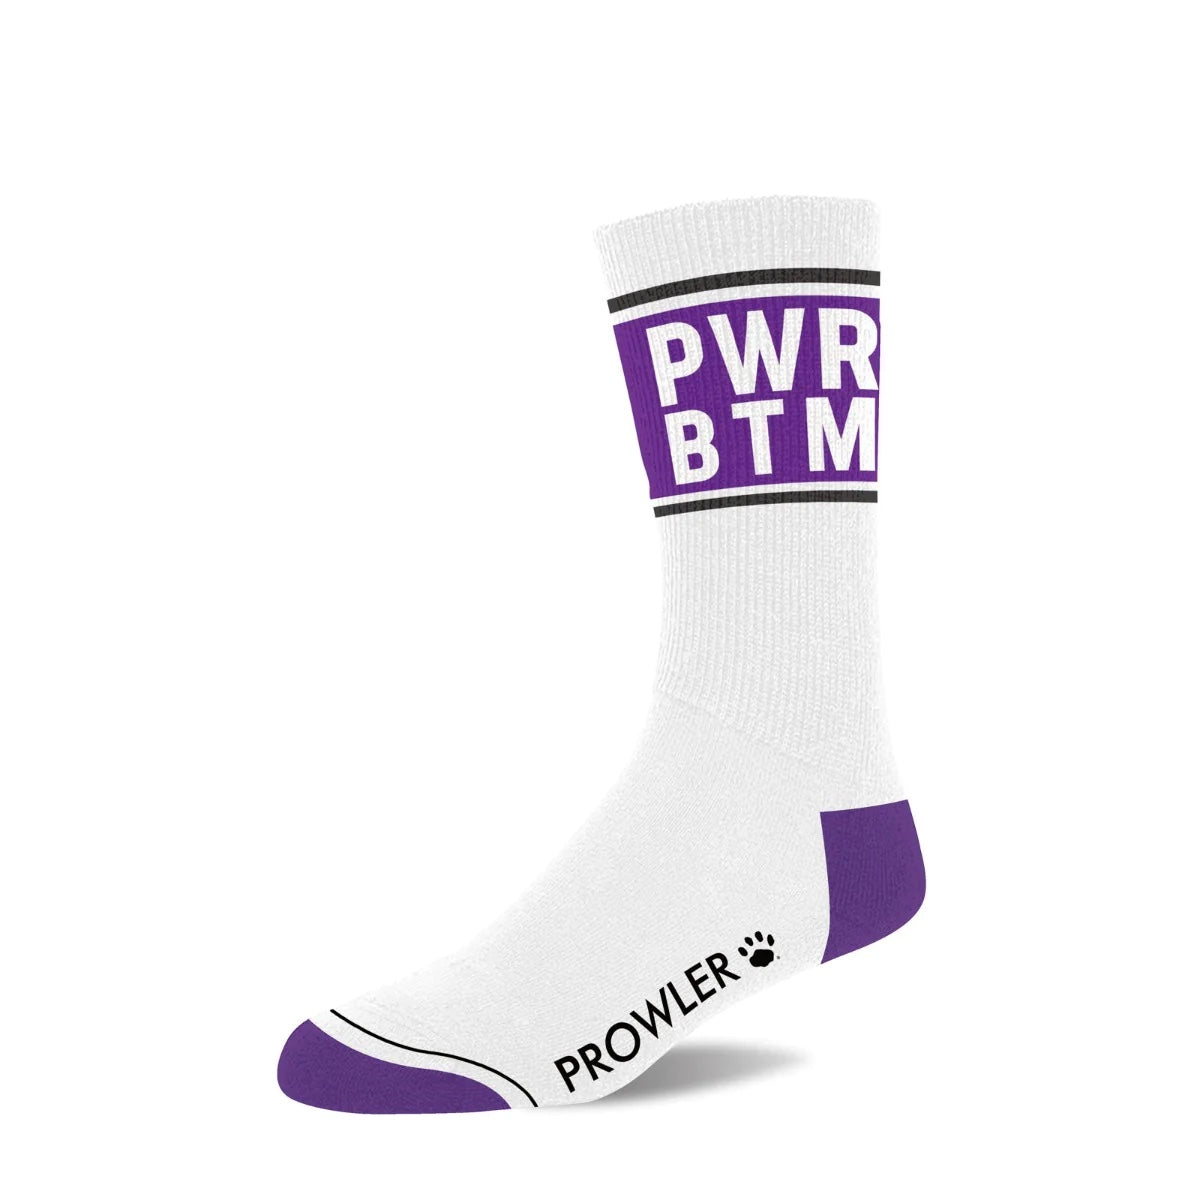 A single White & Purple "PWR BTM" Prowler Text Sock.